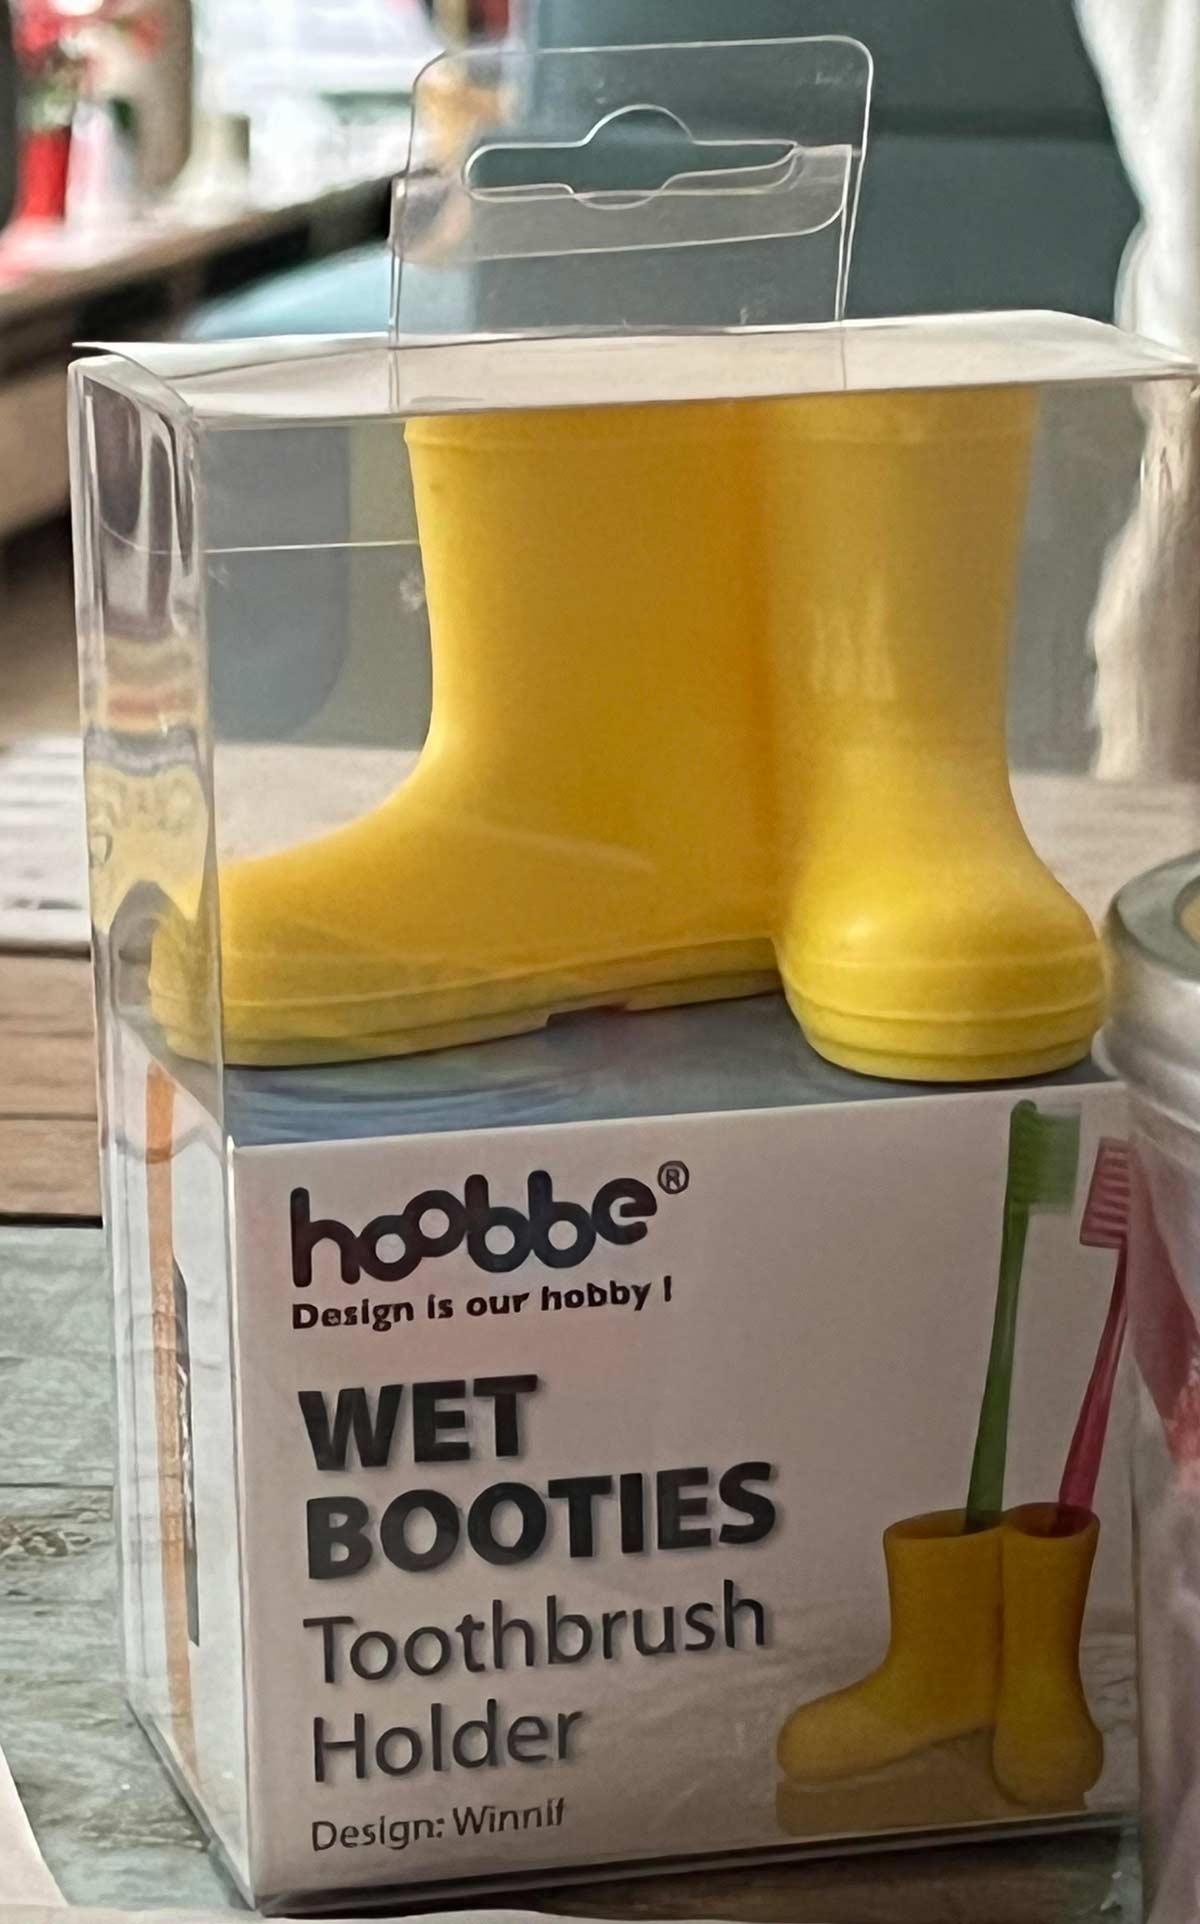 Wet Booties